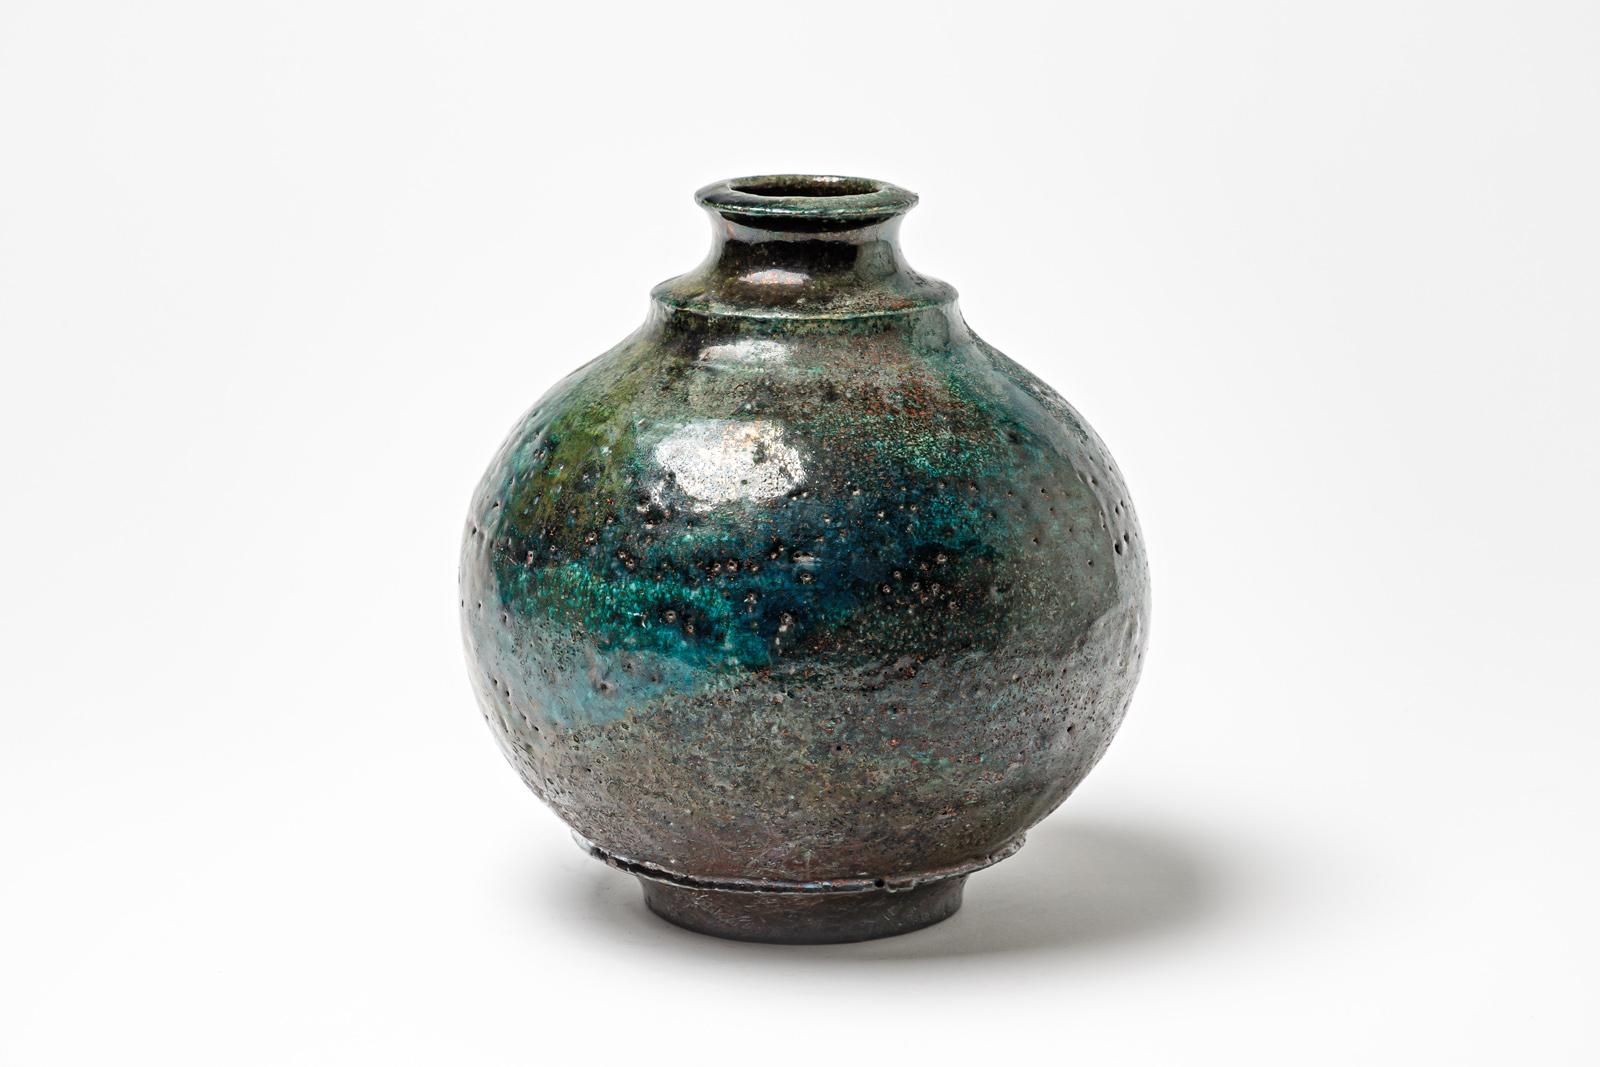 Vase en céramique émaillée bleu/vert de Gisèle Buthod Garçon. 
Raku a tiré. Monogramme de l'artiste sous la base. Vers 1980-1990. 
H : 8.7' x 7.1' pouces.